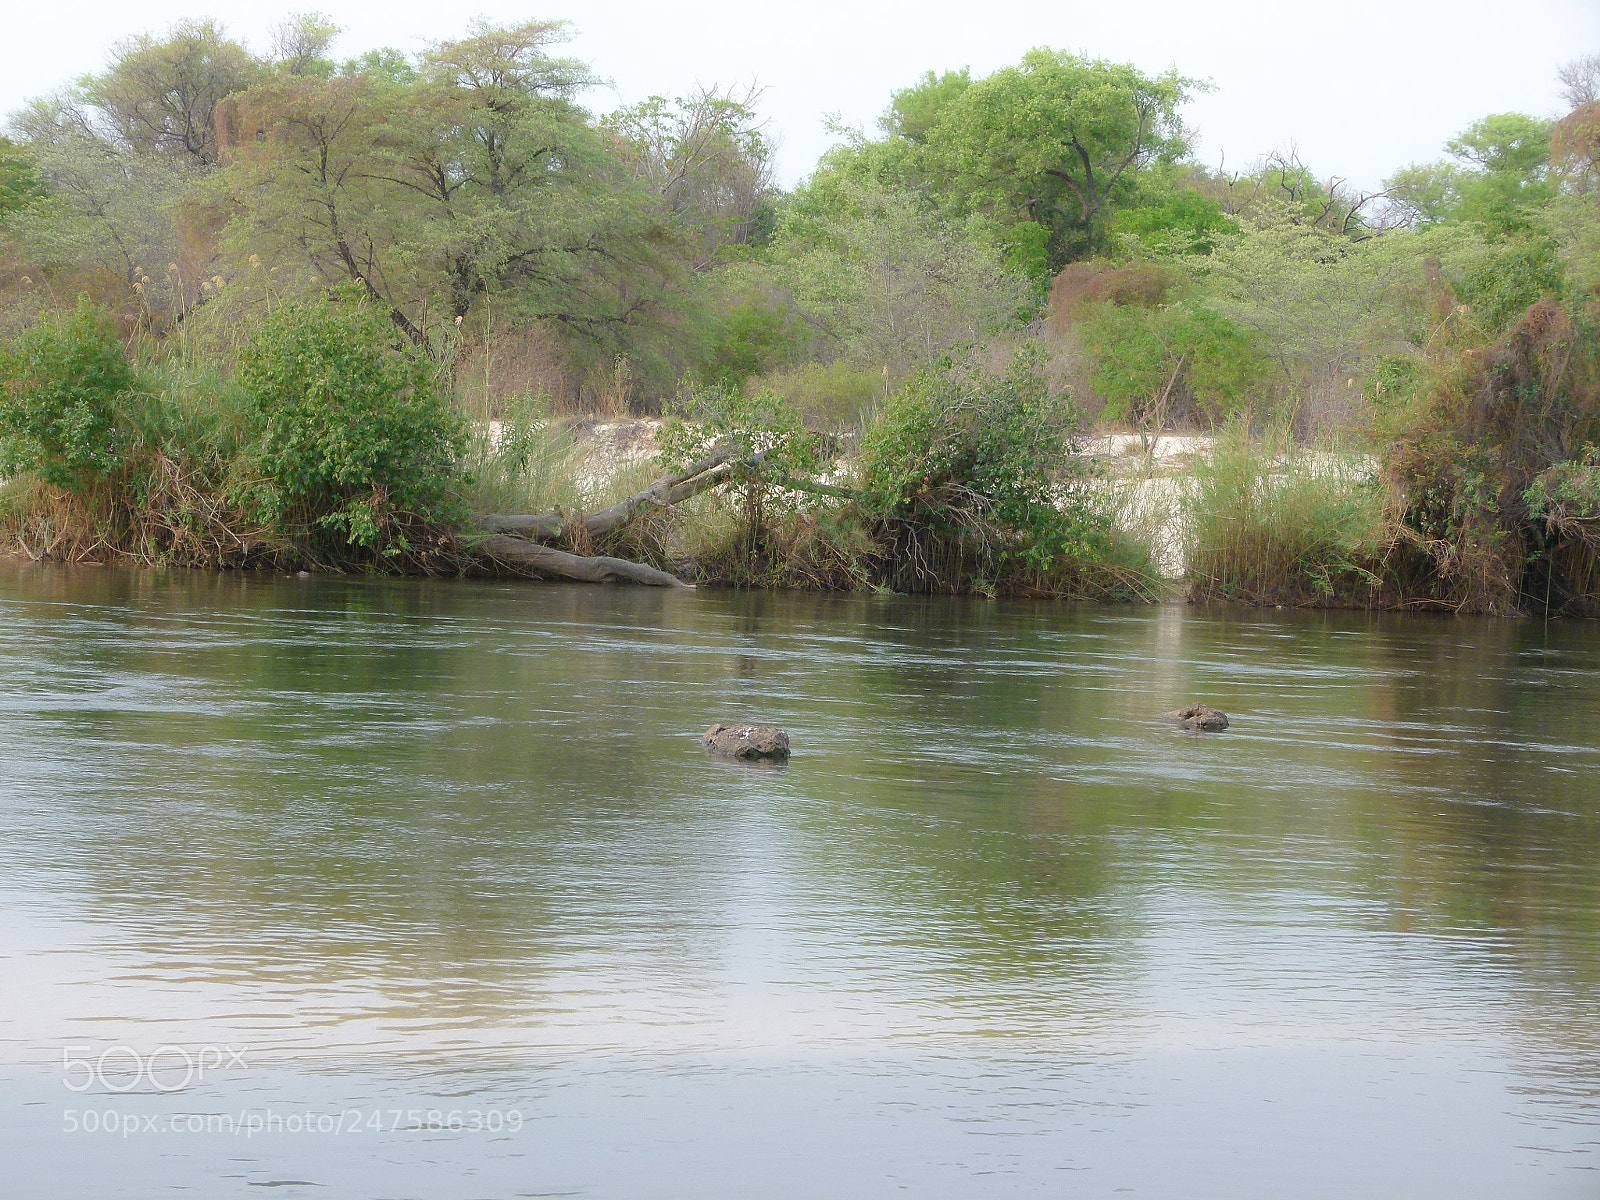 Panasonic Lumix DMC-FZ100 sample photo. Okavango river botswana photography